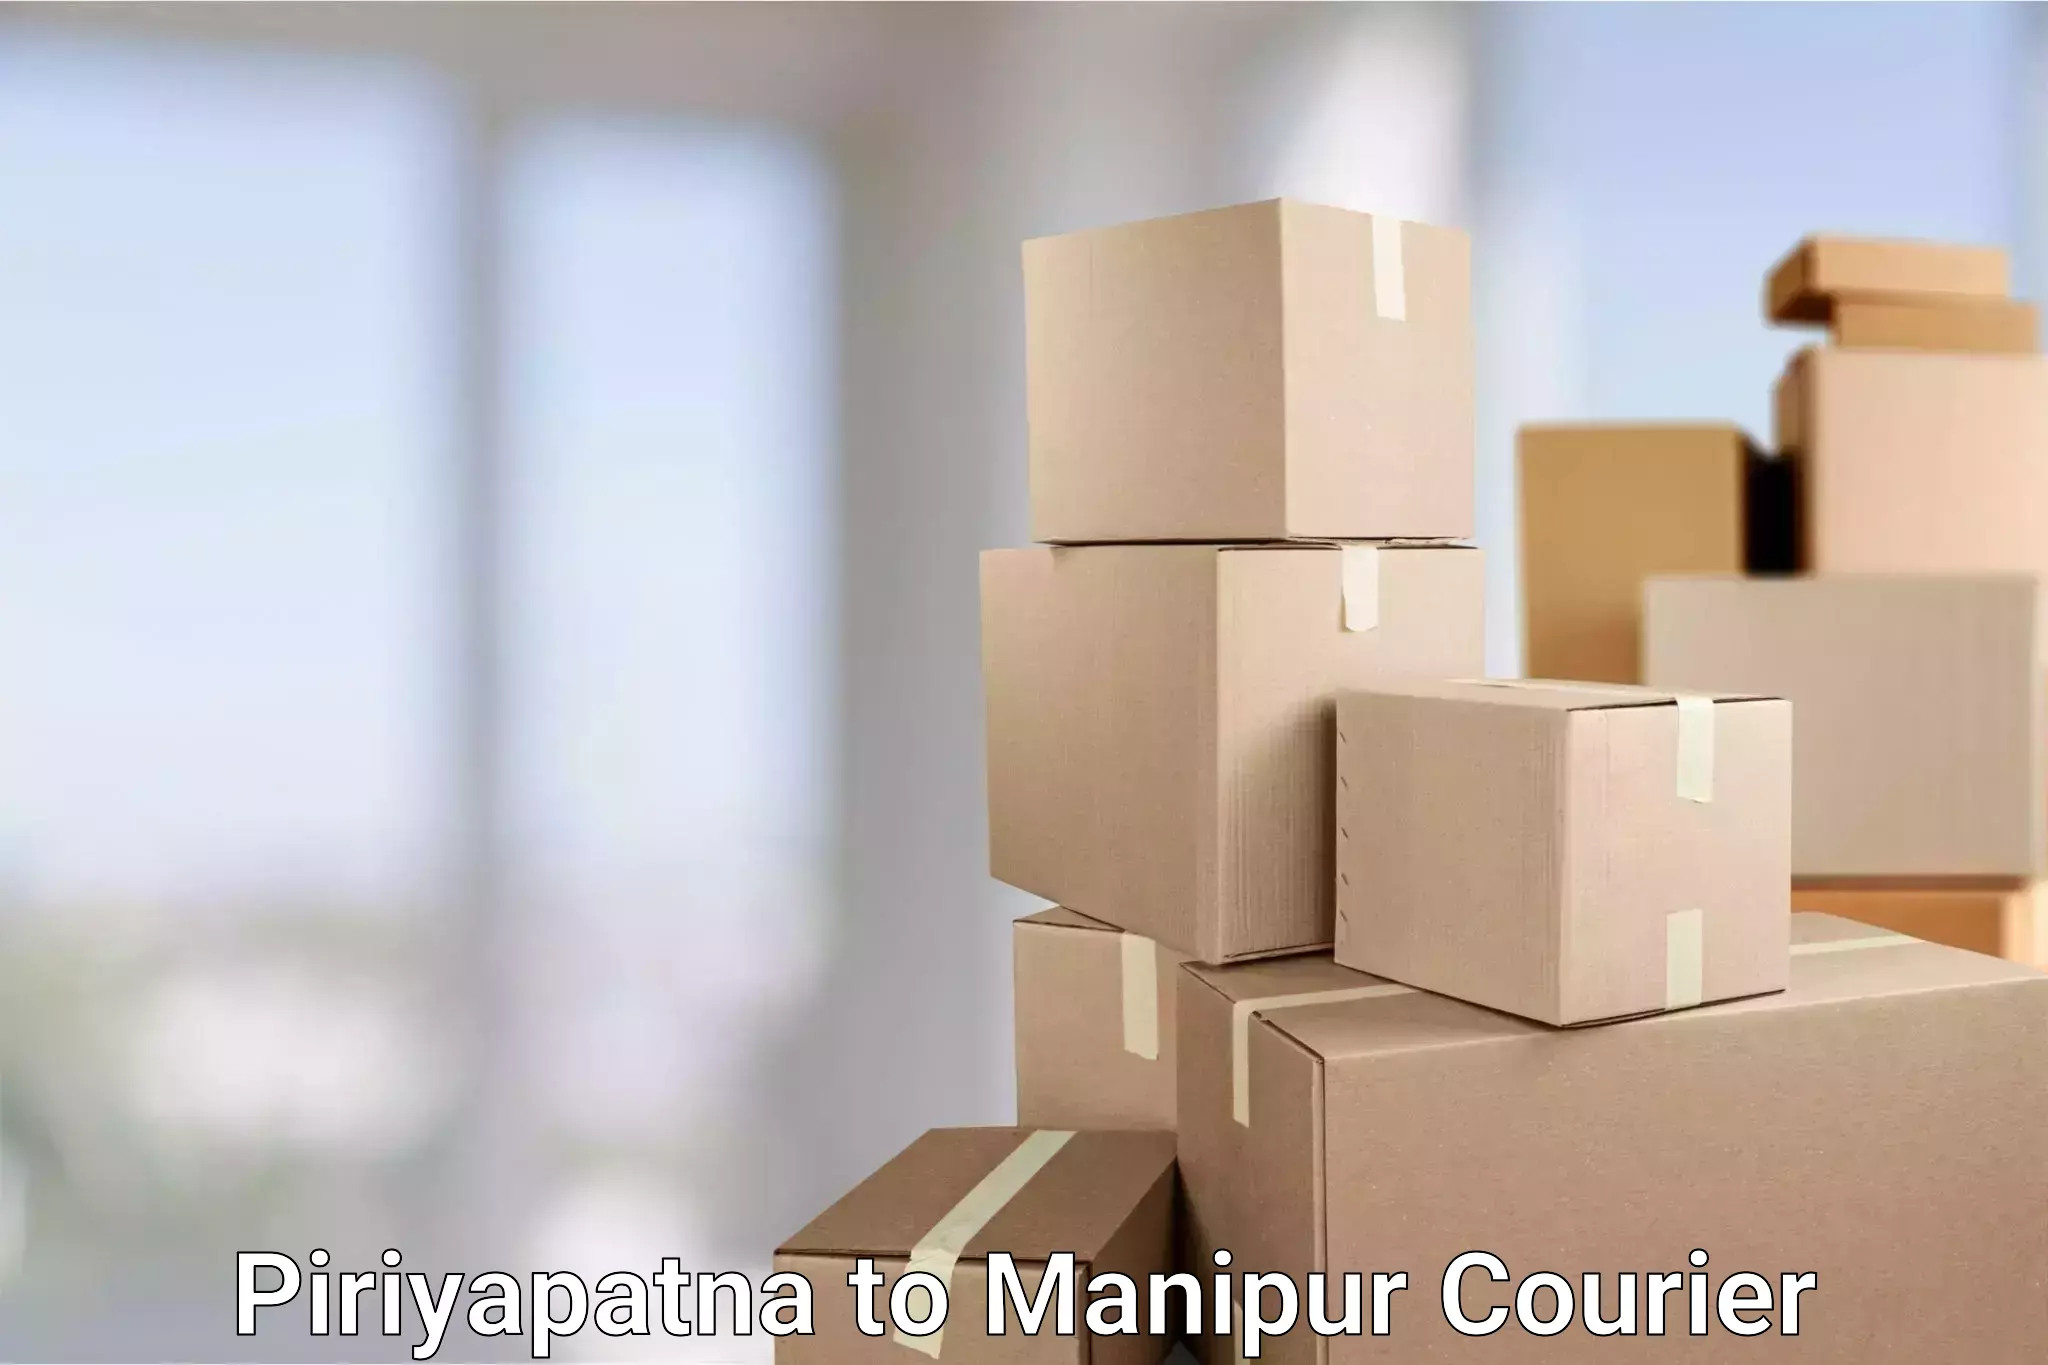 International courier rates Piriyapatna to NIT Manipur